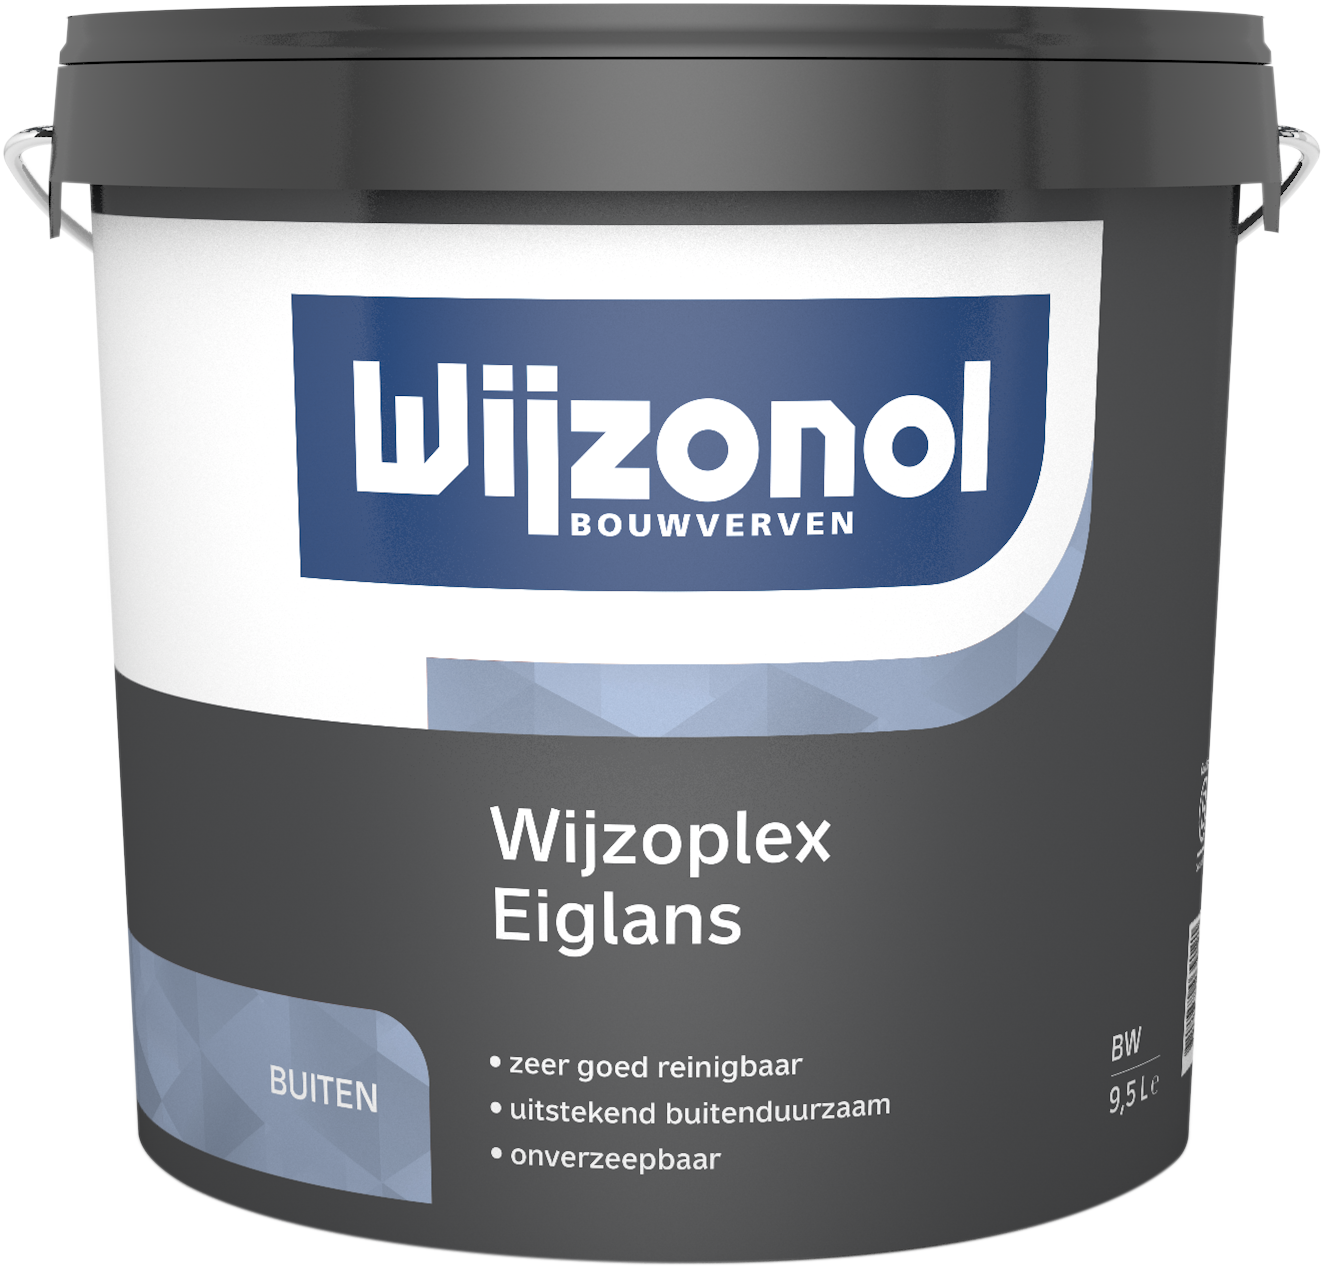 Wijzonol Wijzoplex - Bestel dit product nu bij Verf4all.nl!